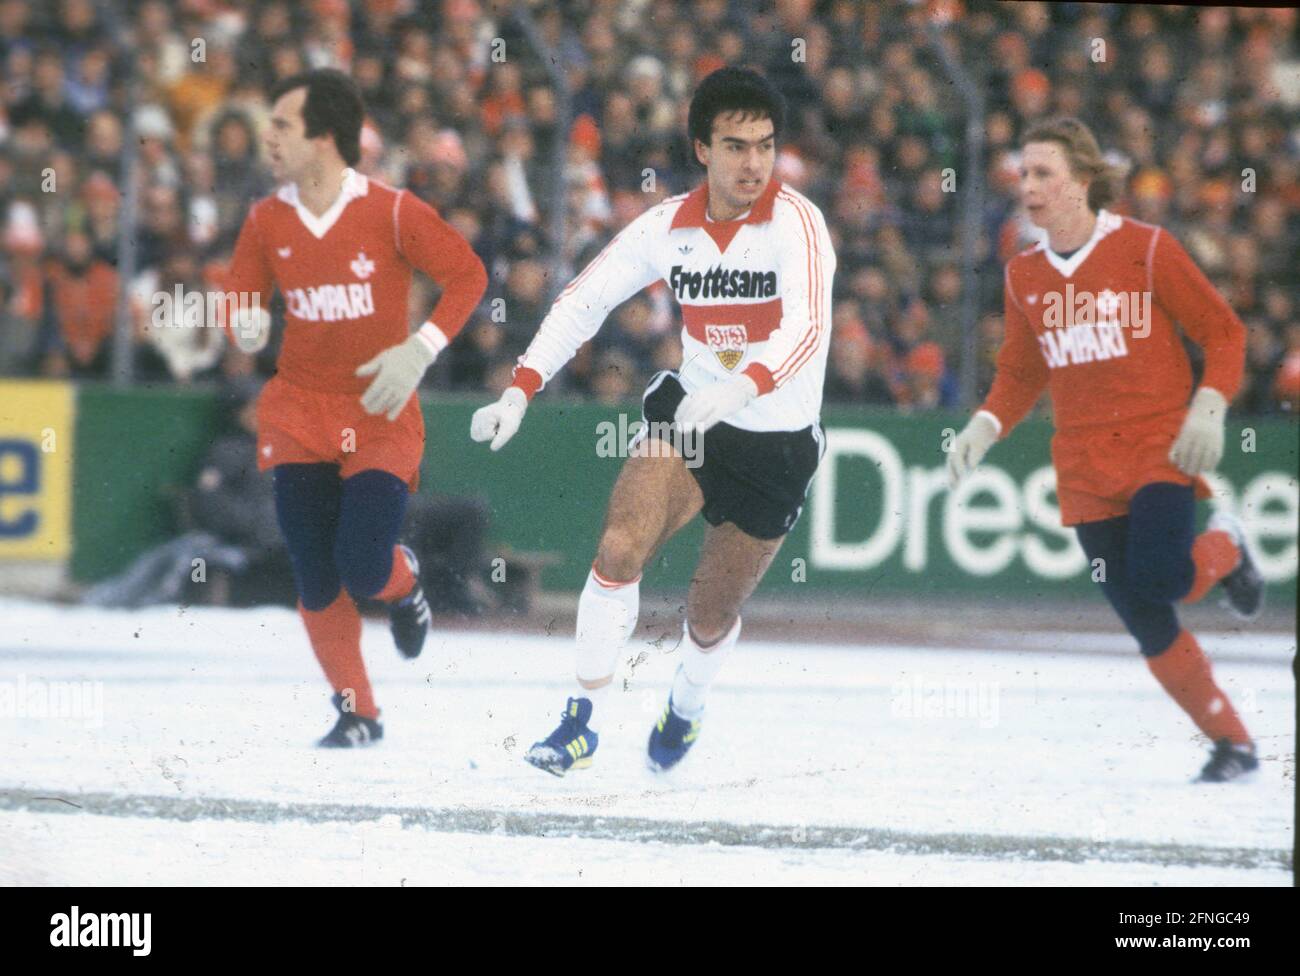 Football Bundesliga season 197879: VFB Stuttgart - 1. FC Kaiserslautern 3:0 on snow ground on 13.01.1979 middle Hansi Müller VFB Stuttgart [automated translation] Stock Photo